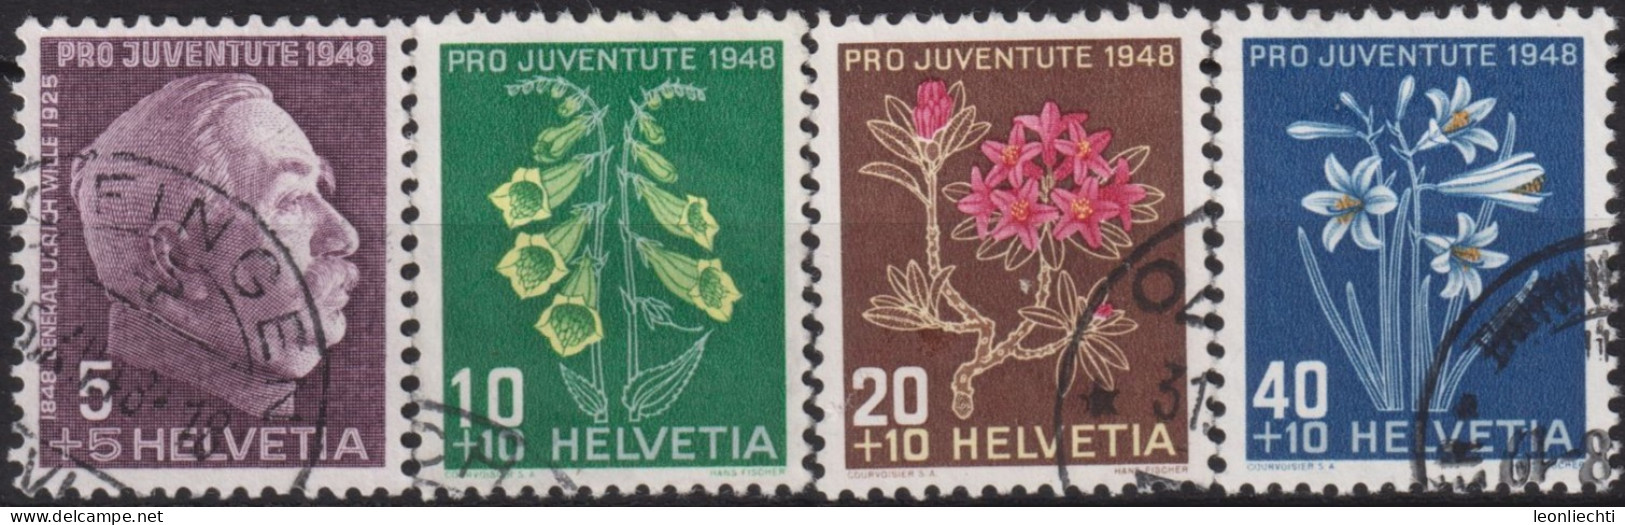 1948 Schweiz Pro Juventute ° Mi:CH 514-517, Yt:CH 467-470, Zum:CH J125-J128,  G. Wille Und Alpenblumen - Used Stamps